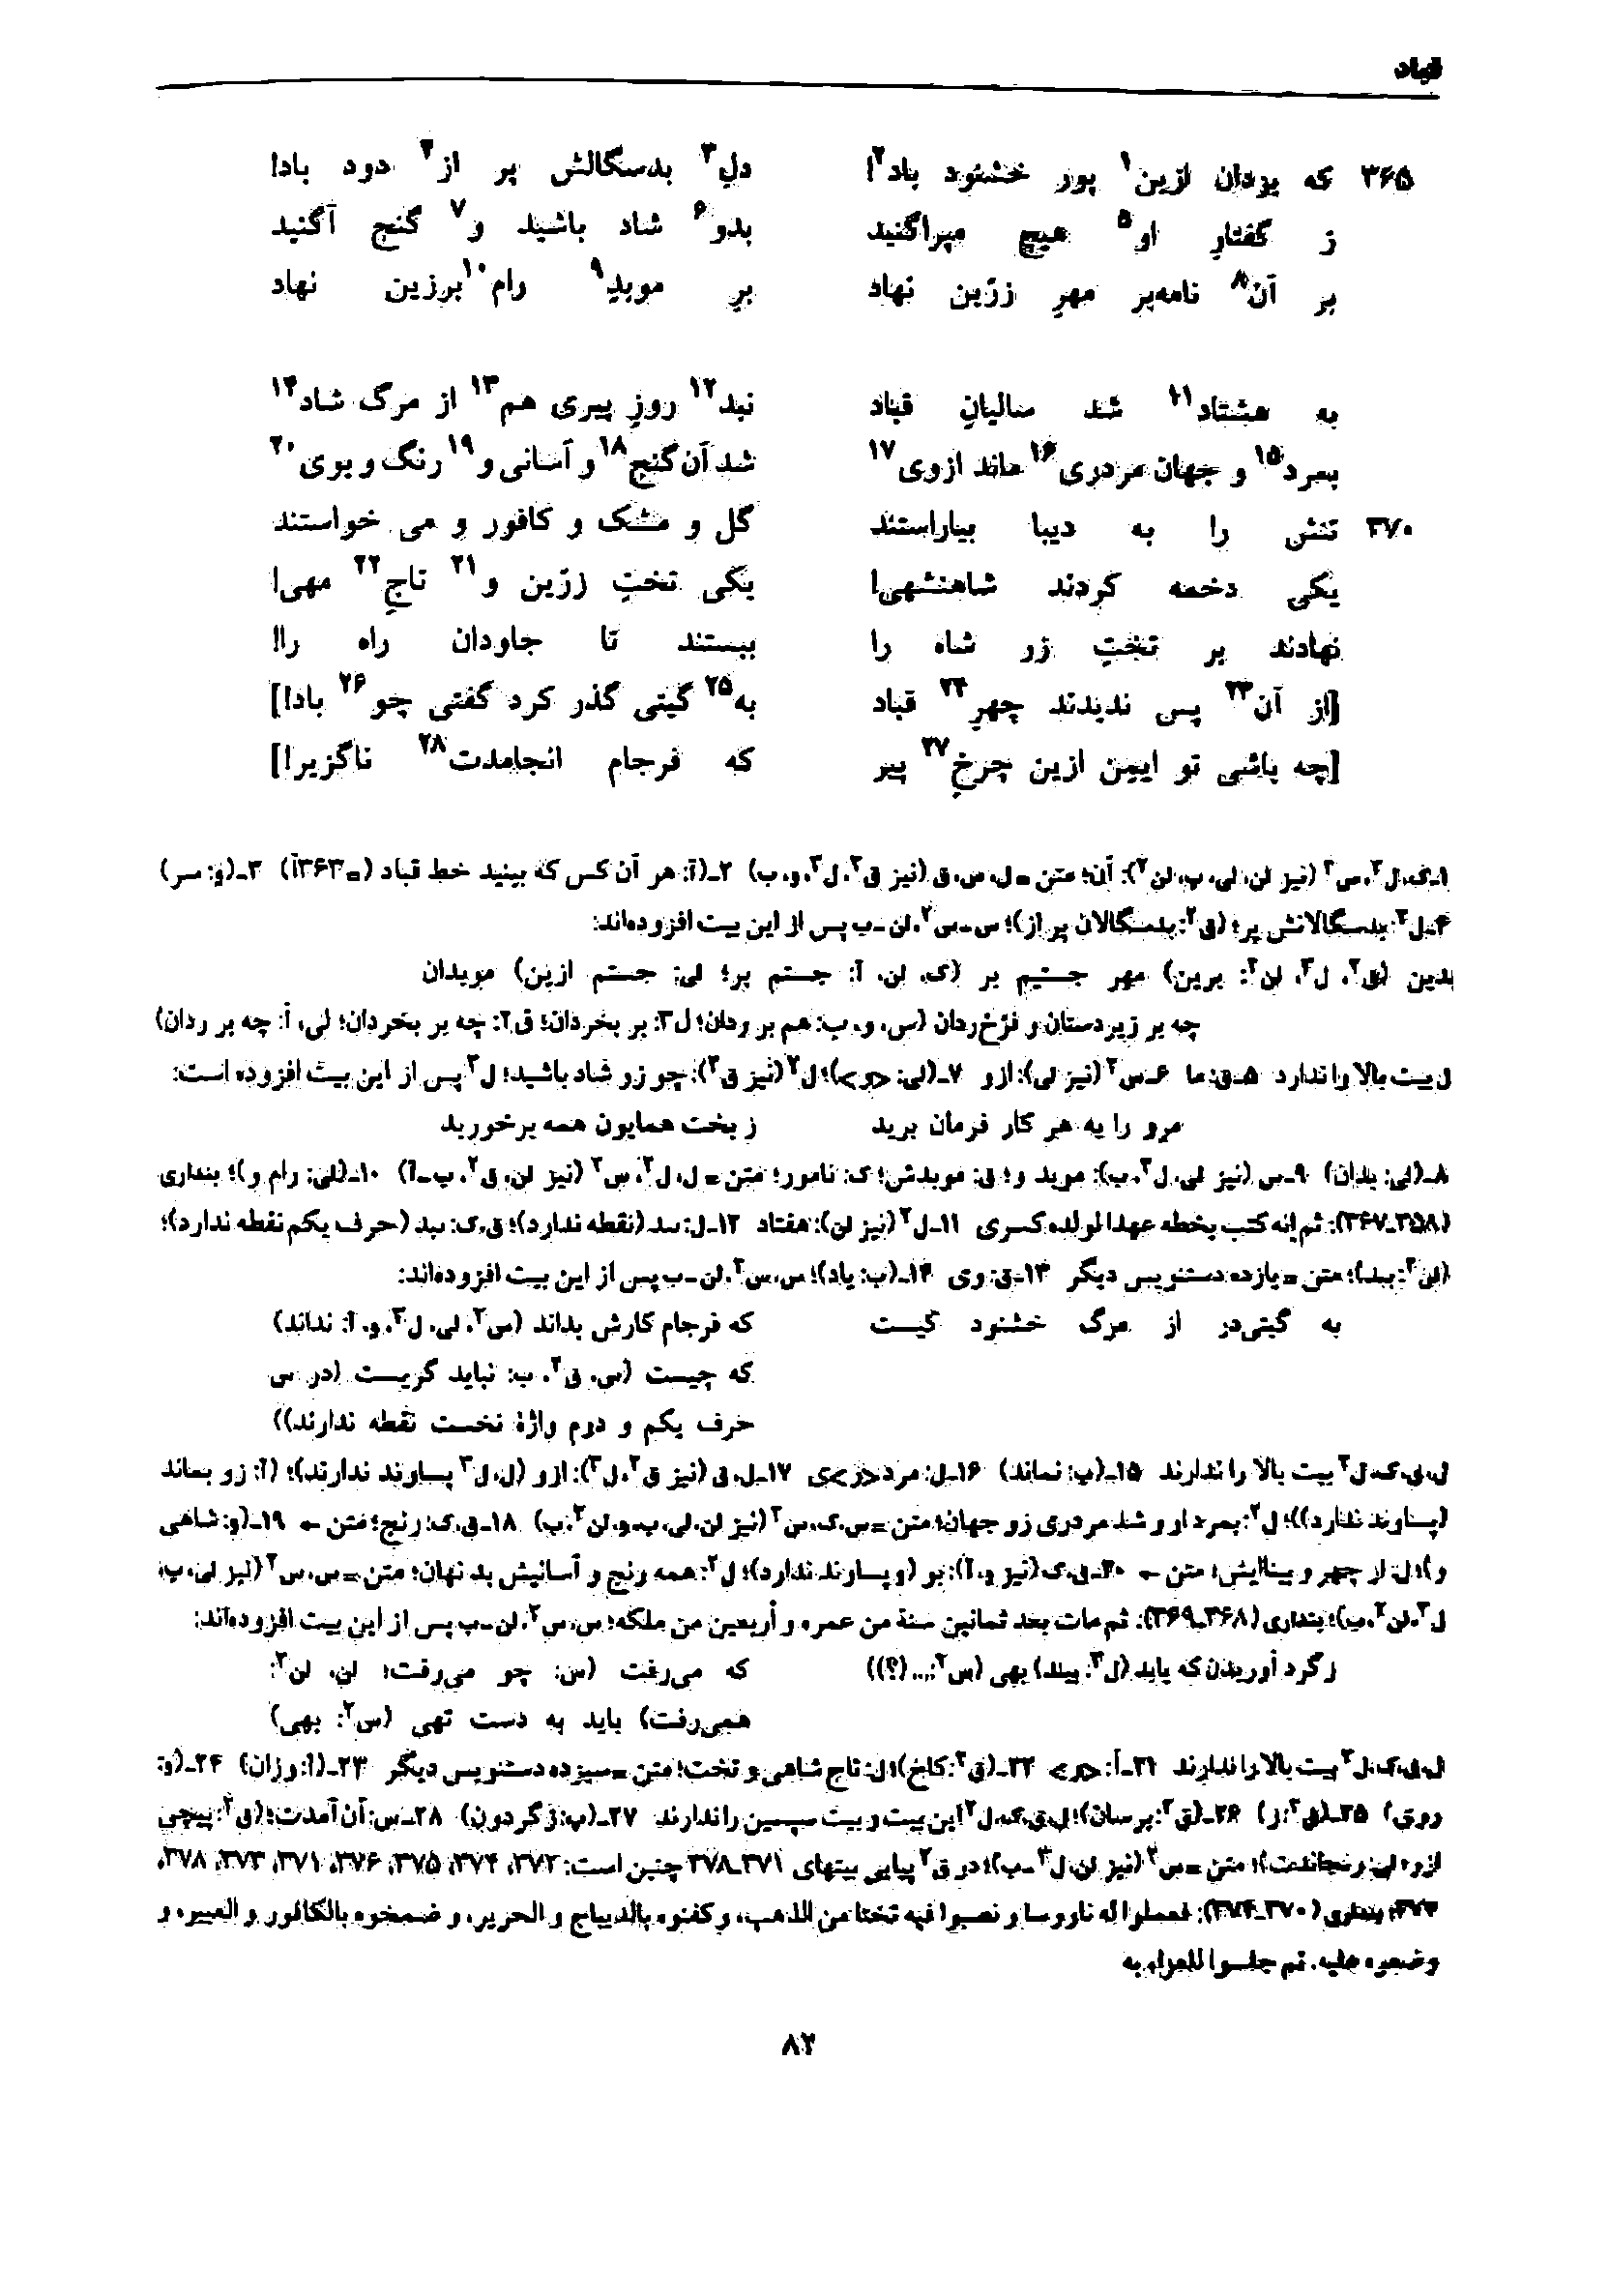 vol. 7, p. 82